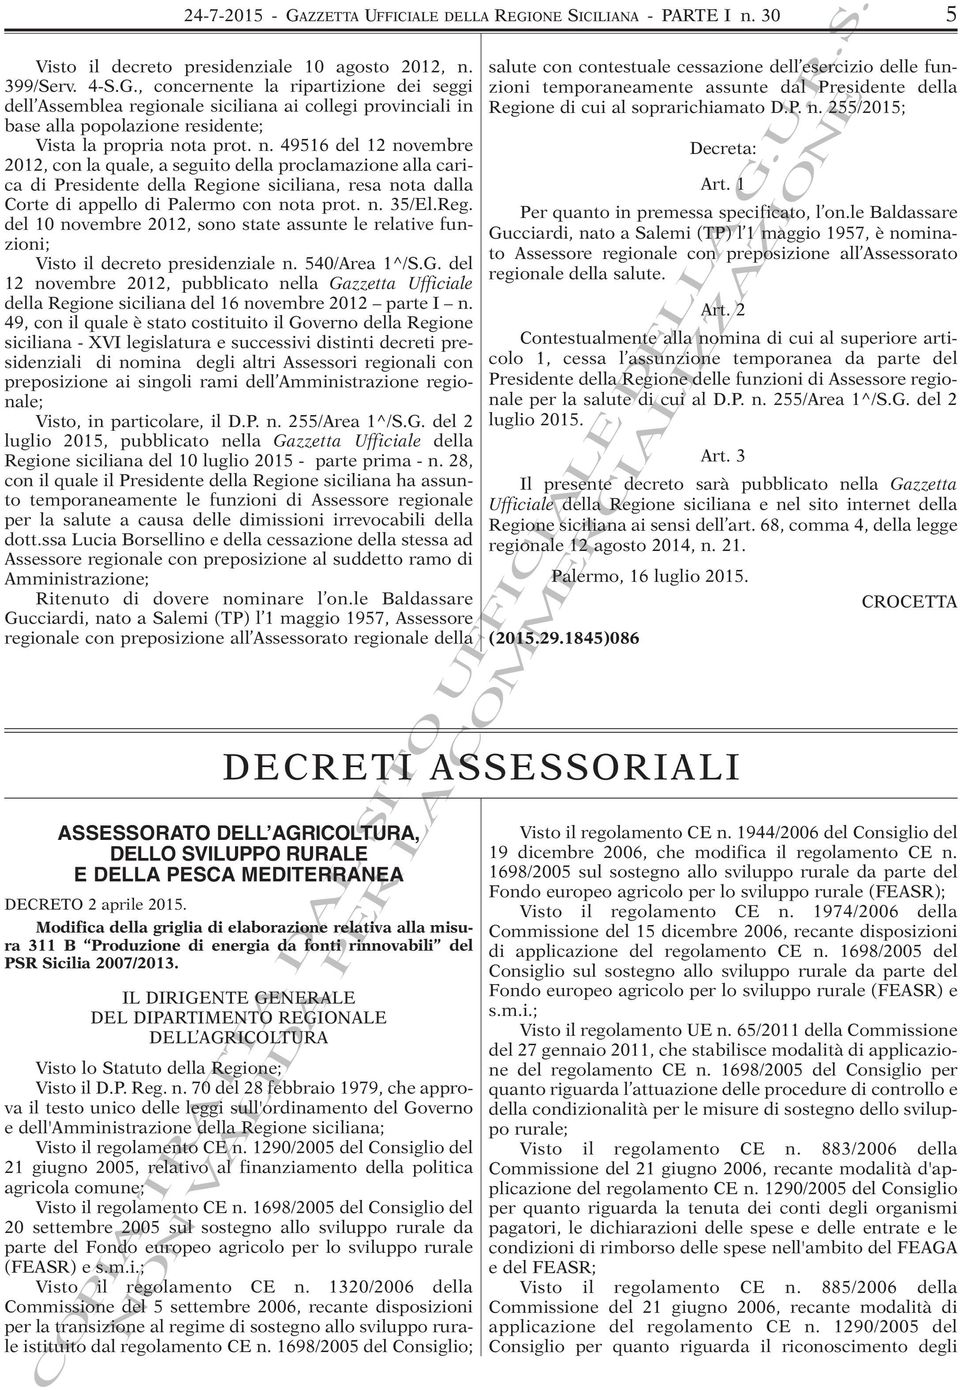 one siciliana, resa nota dalla Corte di appello di Palermo con nota prot. n. 35/El.Reg. del 10 novembre 2012, sono state assunte le relative funzioni; Visto il decreto presidenziale n. 540/Area 1^/S.